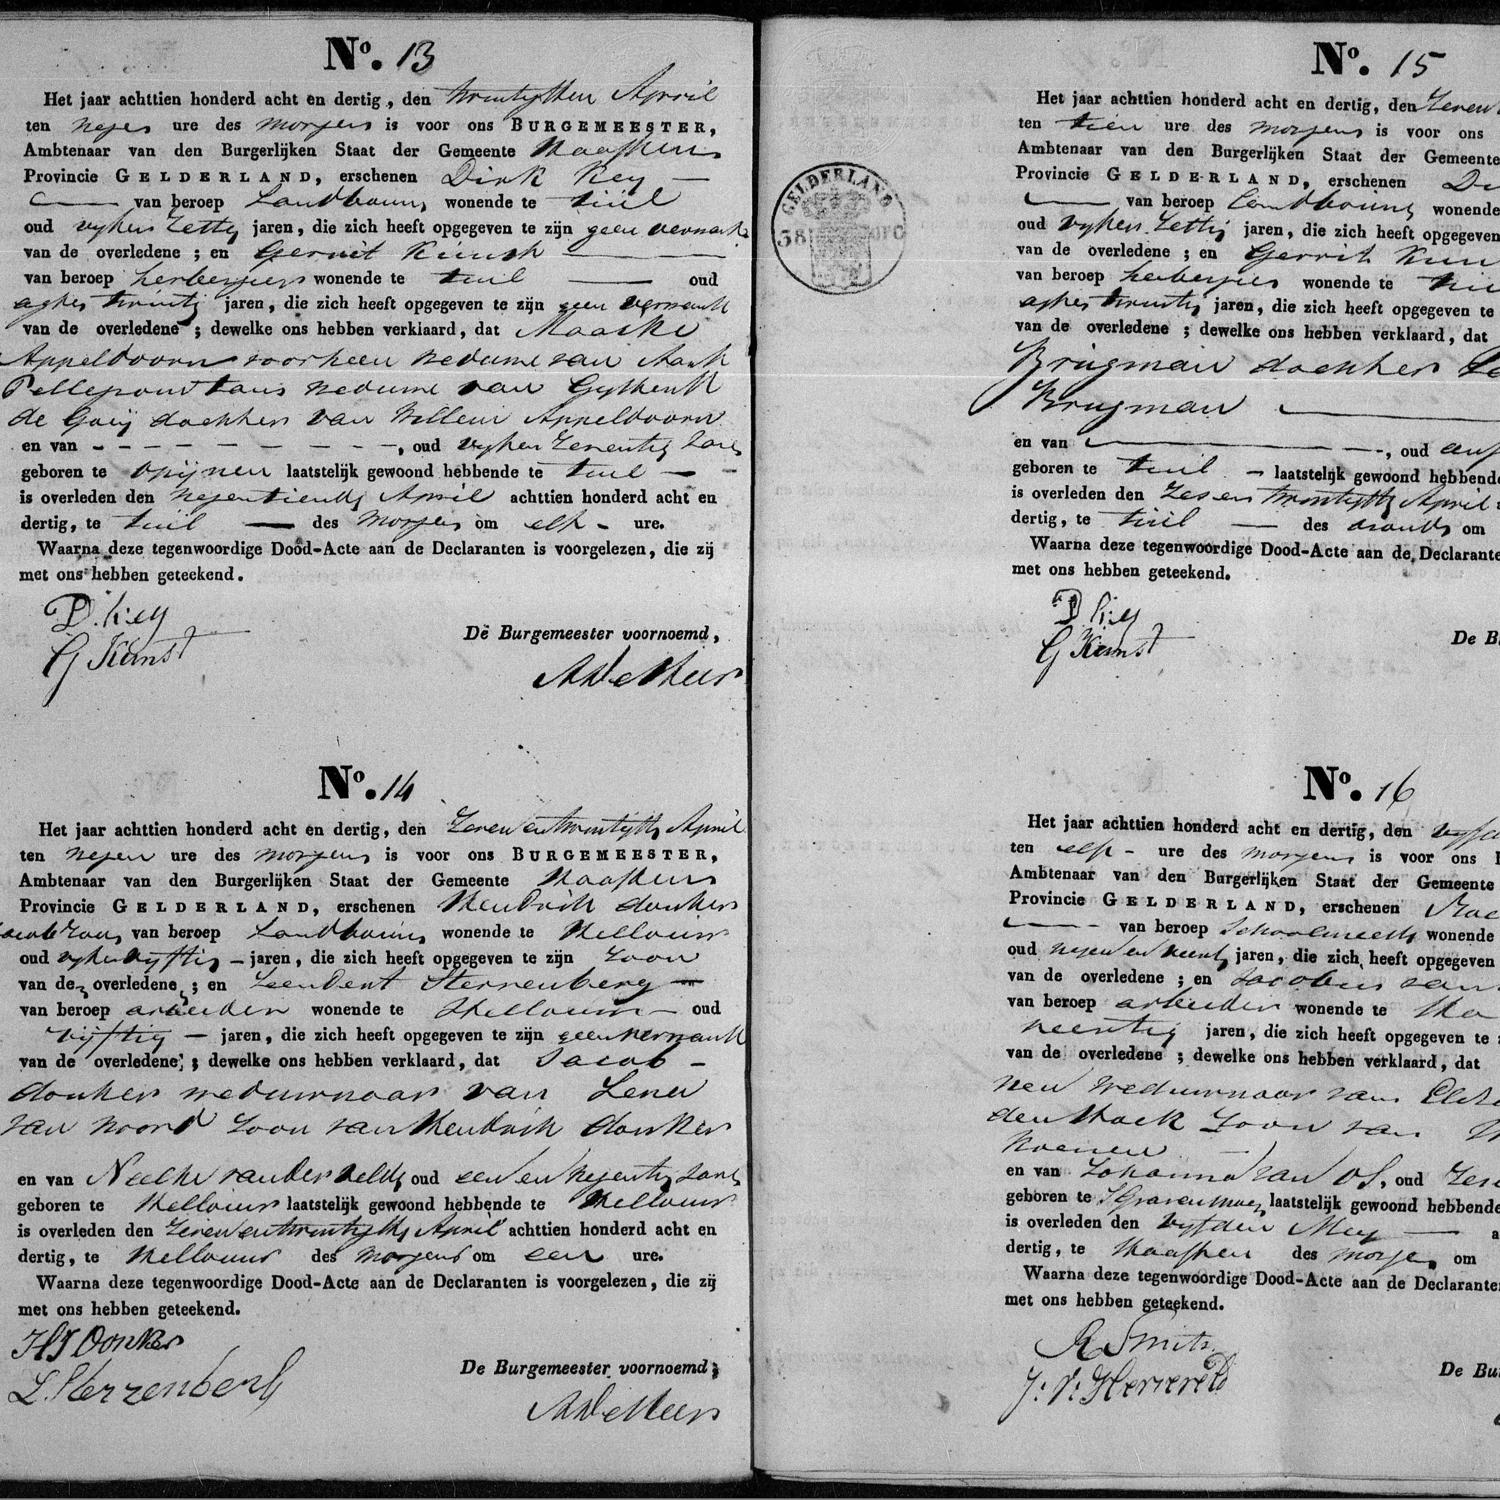 Civil registry of deaths, Haaften, 1838, records 13-16